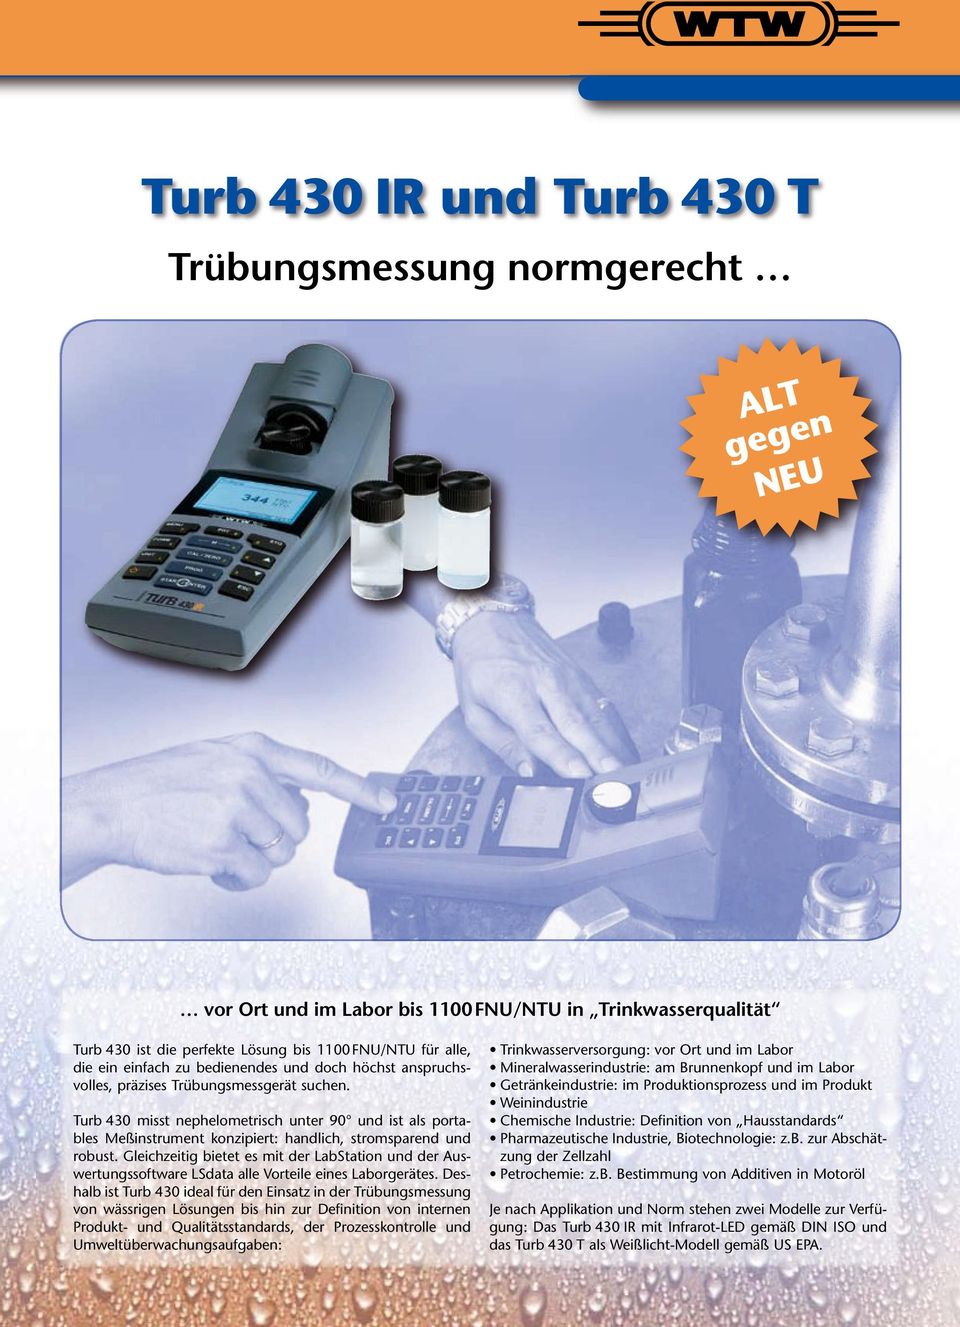 Turb 430 misst nephelometrisch unter 90 und ist als portables Meßinstrument konzipiert: handlich, stromsparend und robust.